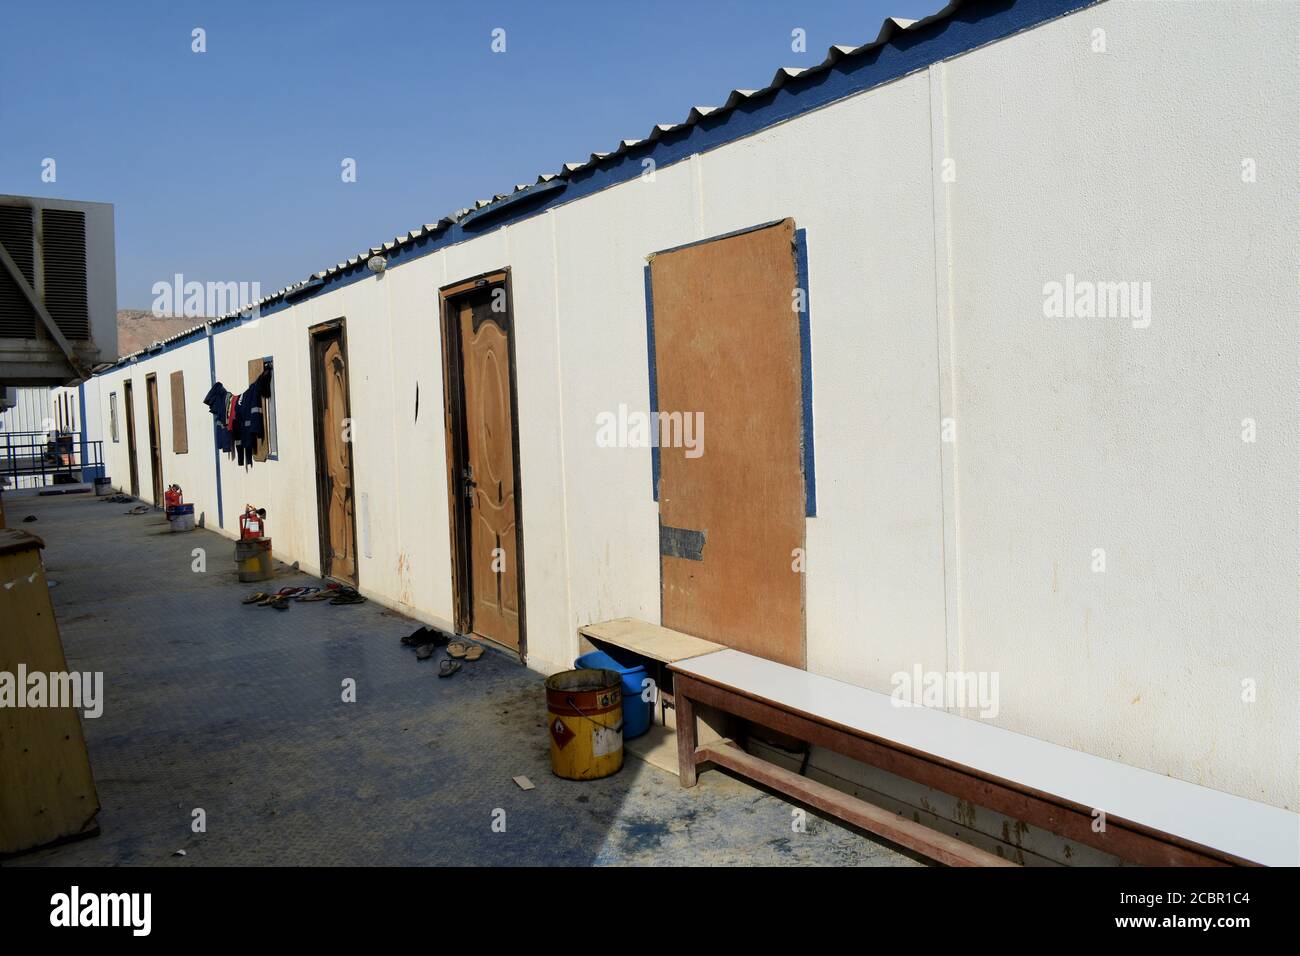 Costruzione temporanea in cantiere industriale o container per uffici in cantiere: Muscat, Oman - 19-08-2020. Cabina. Foto Stock